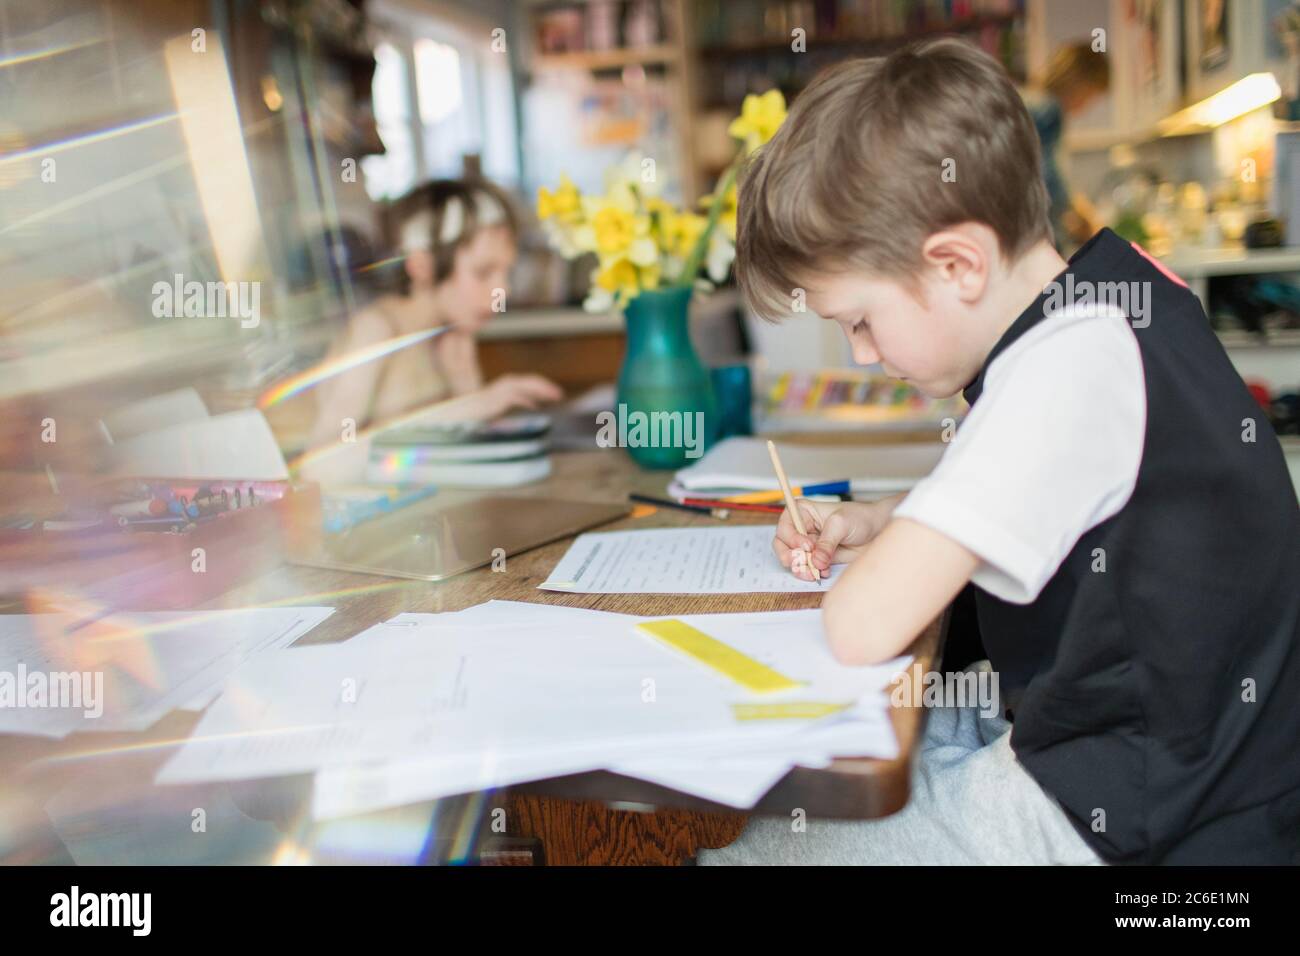 Boy doing homework at table à manger Banque D'Images